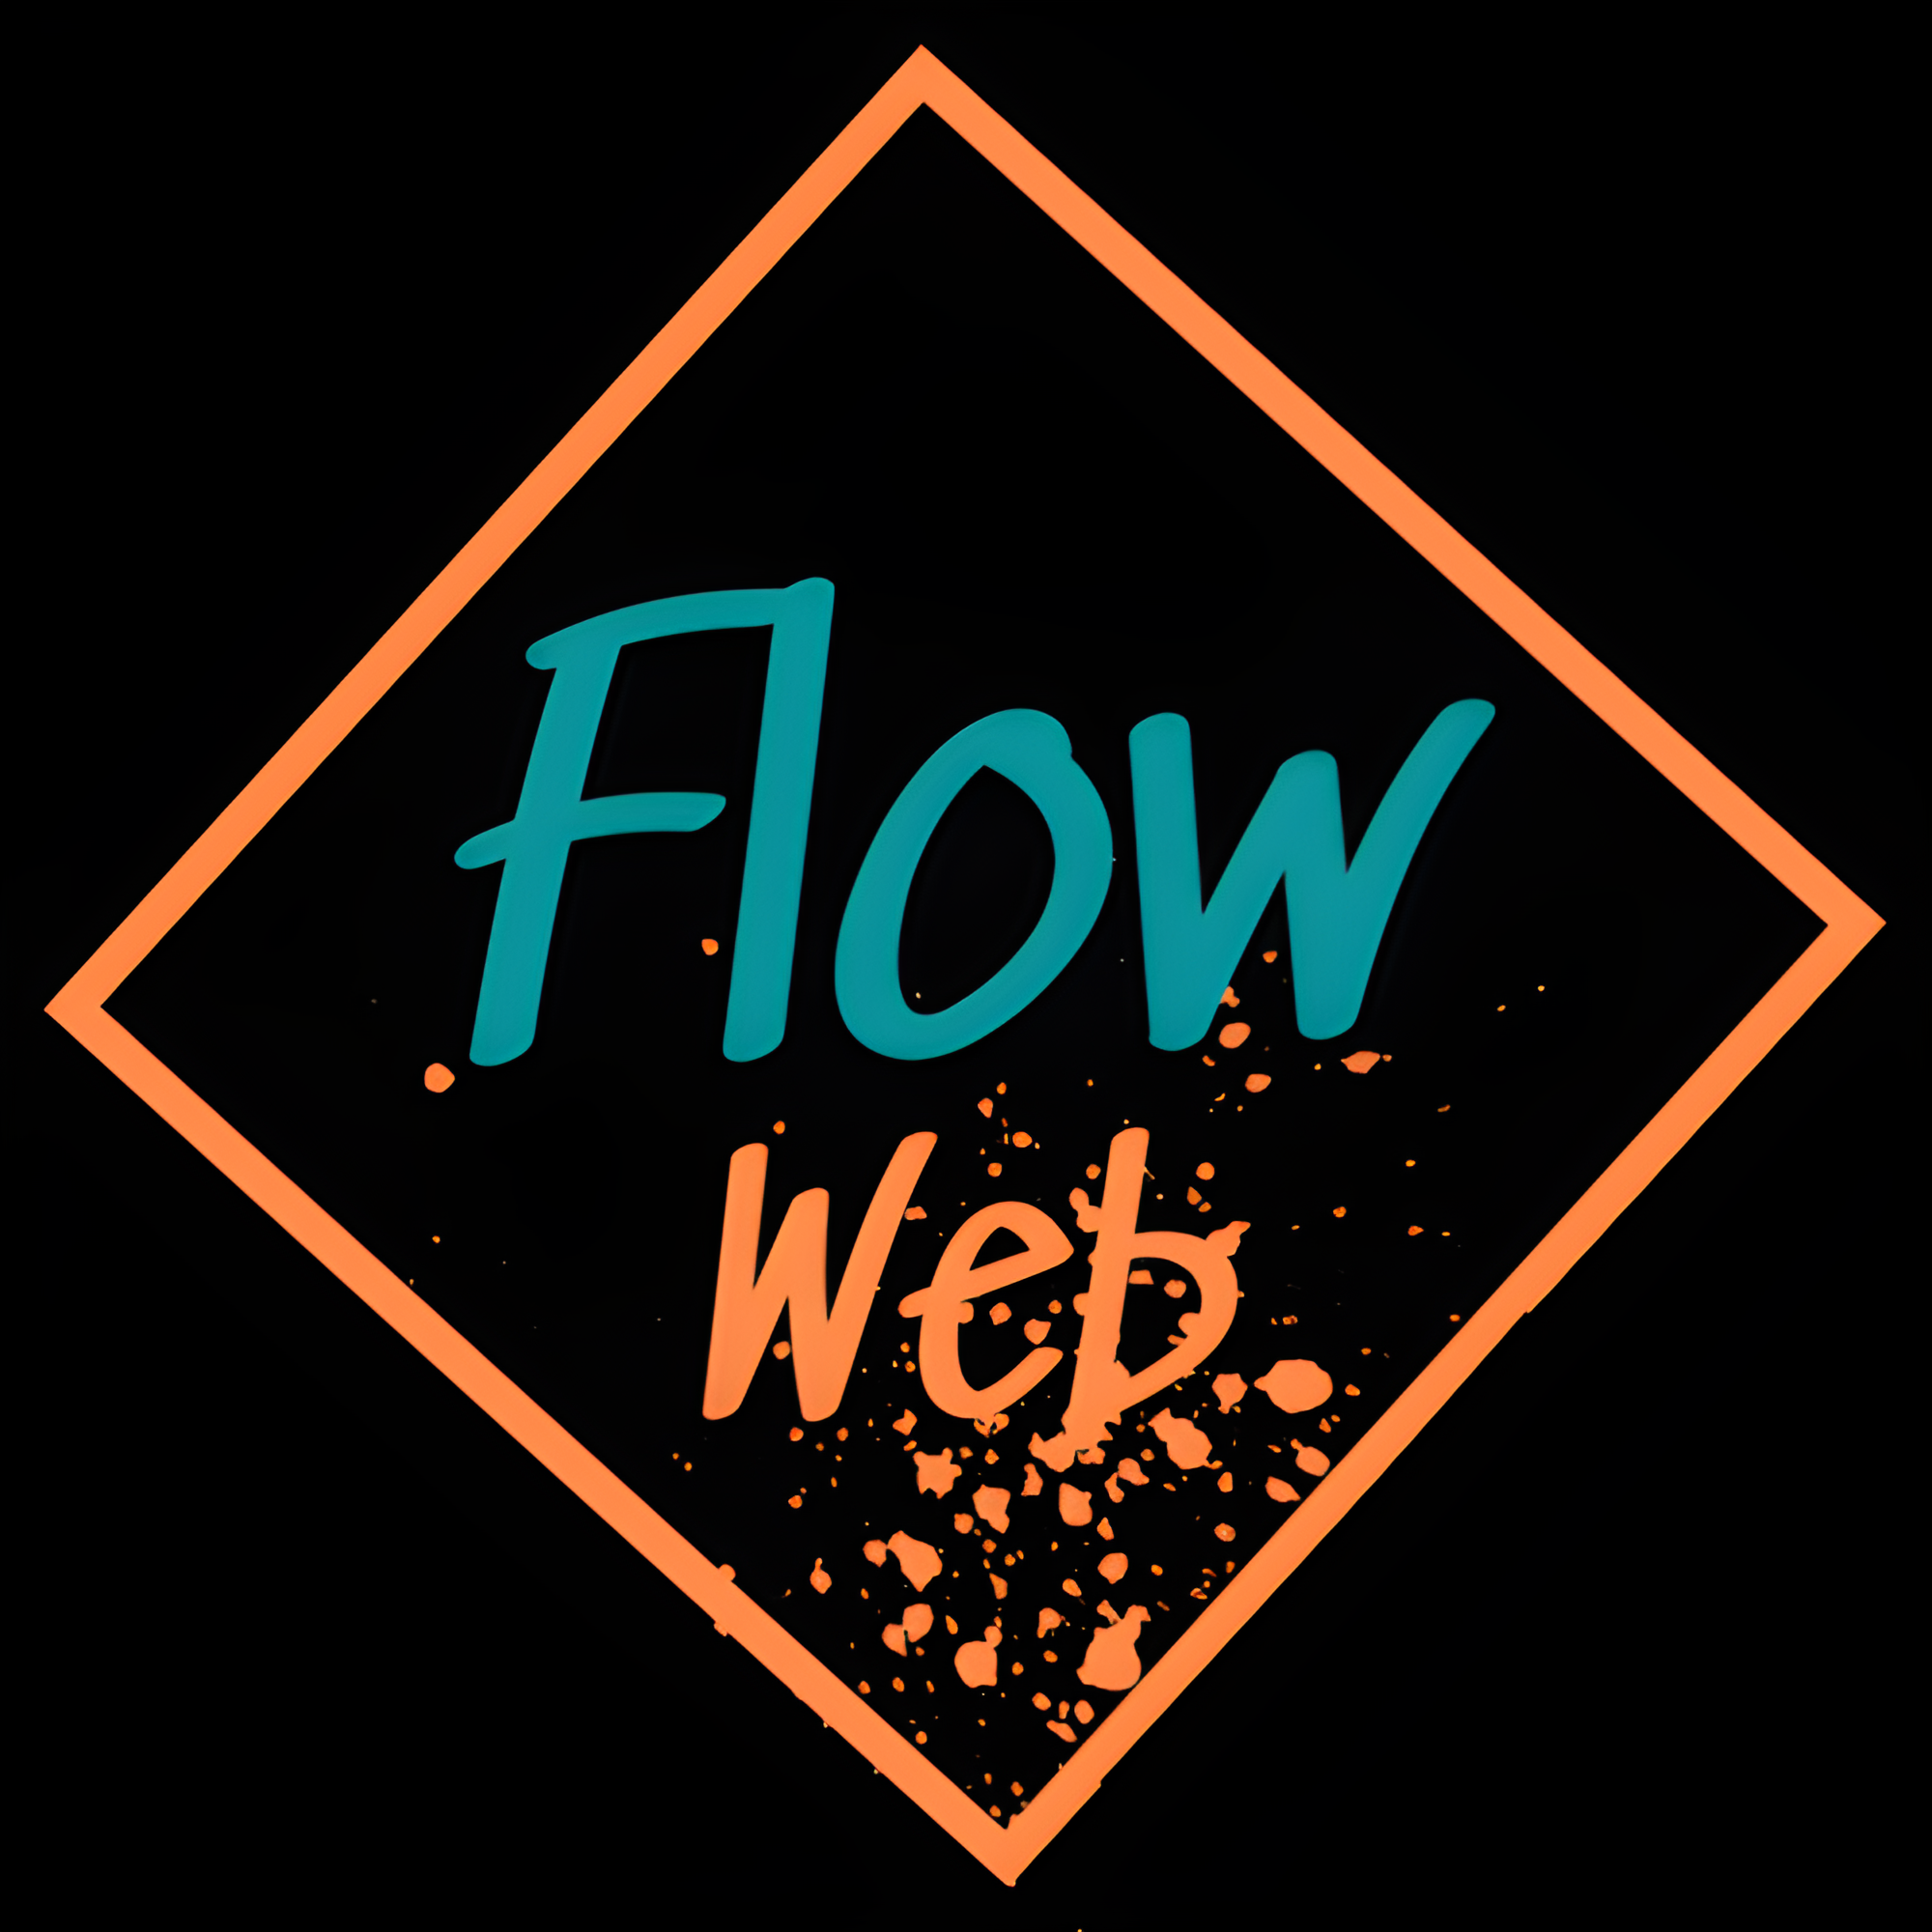 FLOW WEB